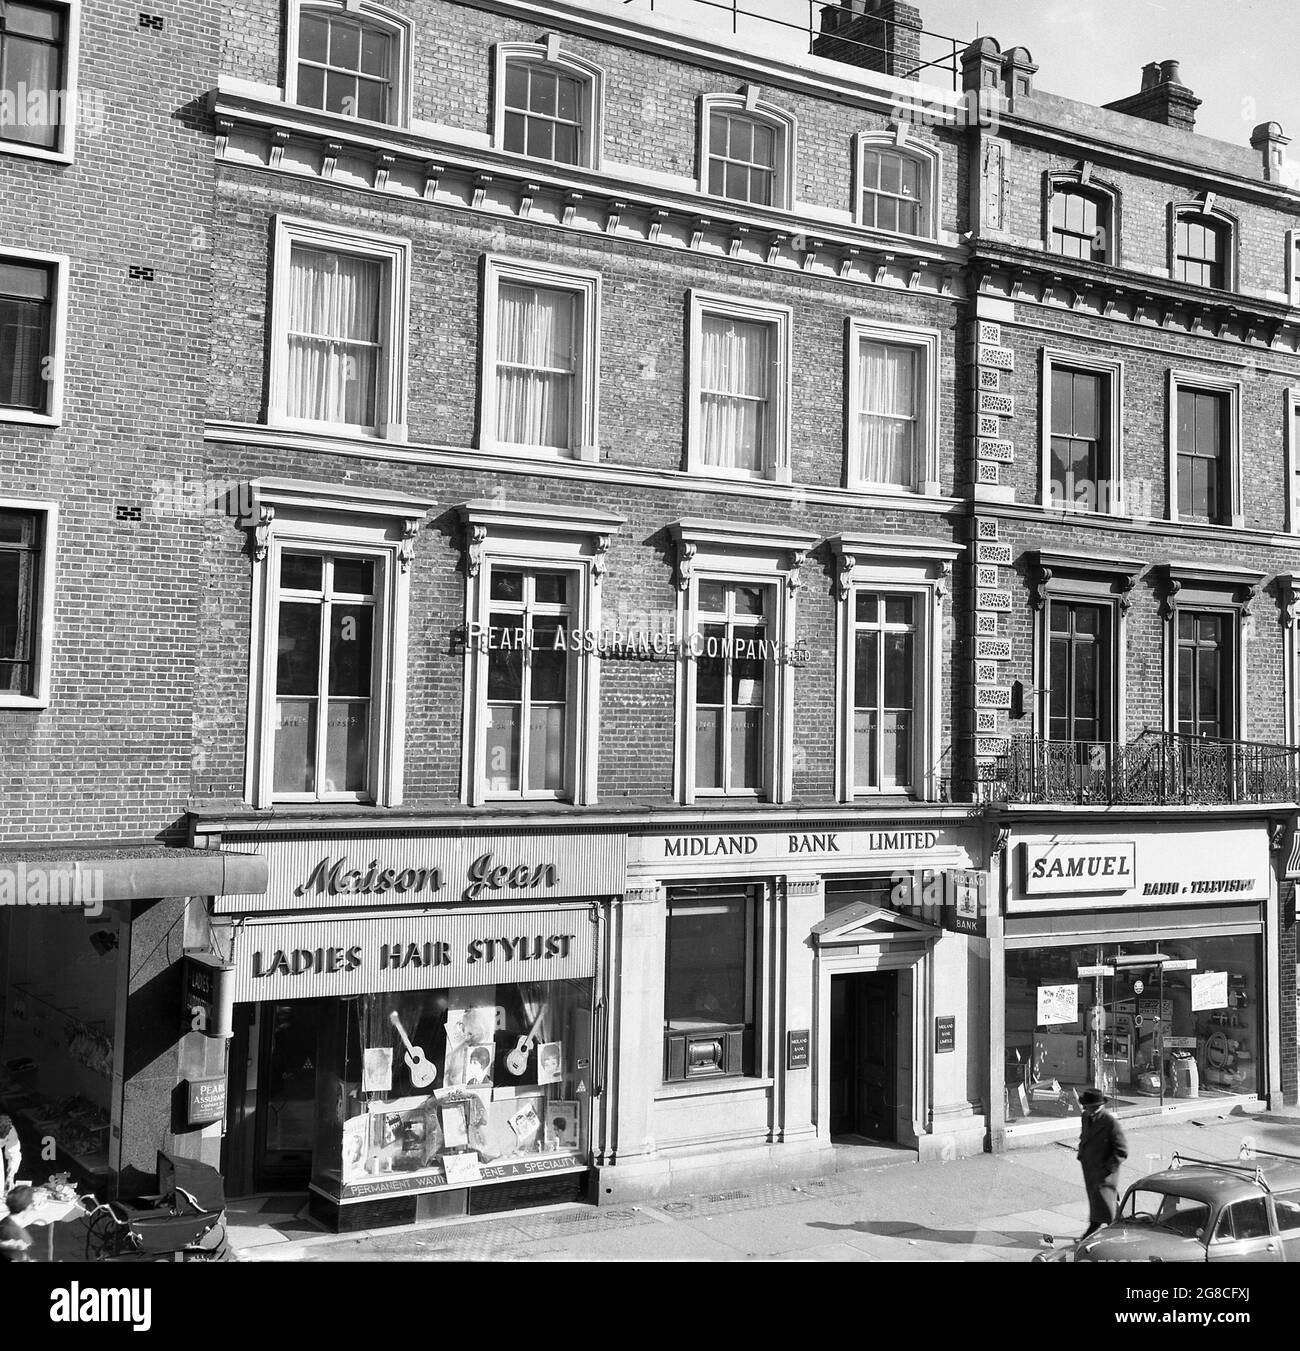 1960s, histórico, una calle de Londres alta de edificios victorianos  adosados con tiendas debajo, mostrando algunos de los minoristas del día;  Maison Jean (señoras estilista de pelo), Midland Bank ad Samuel (Radio